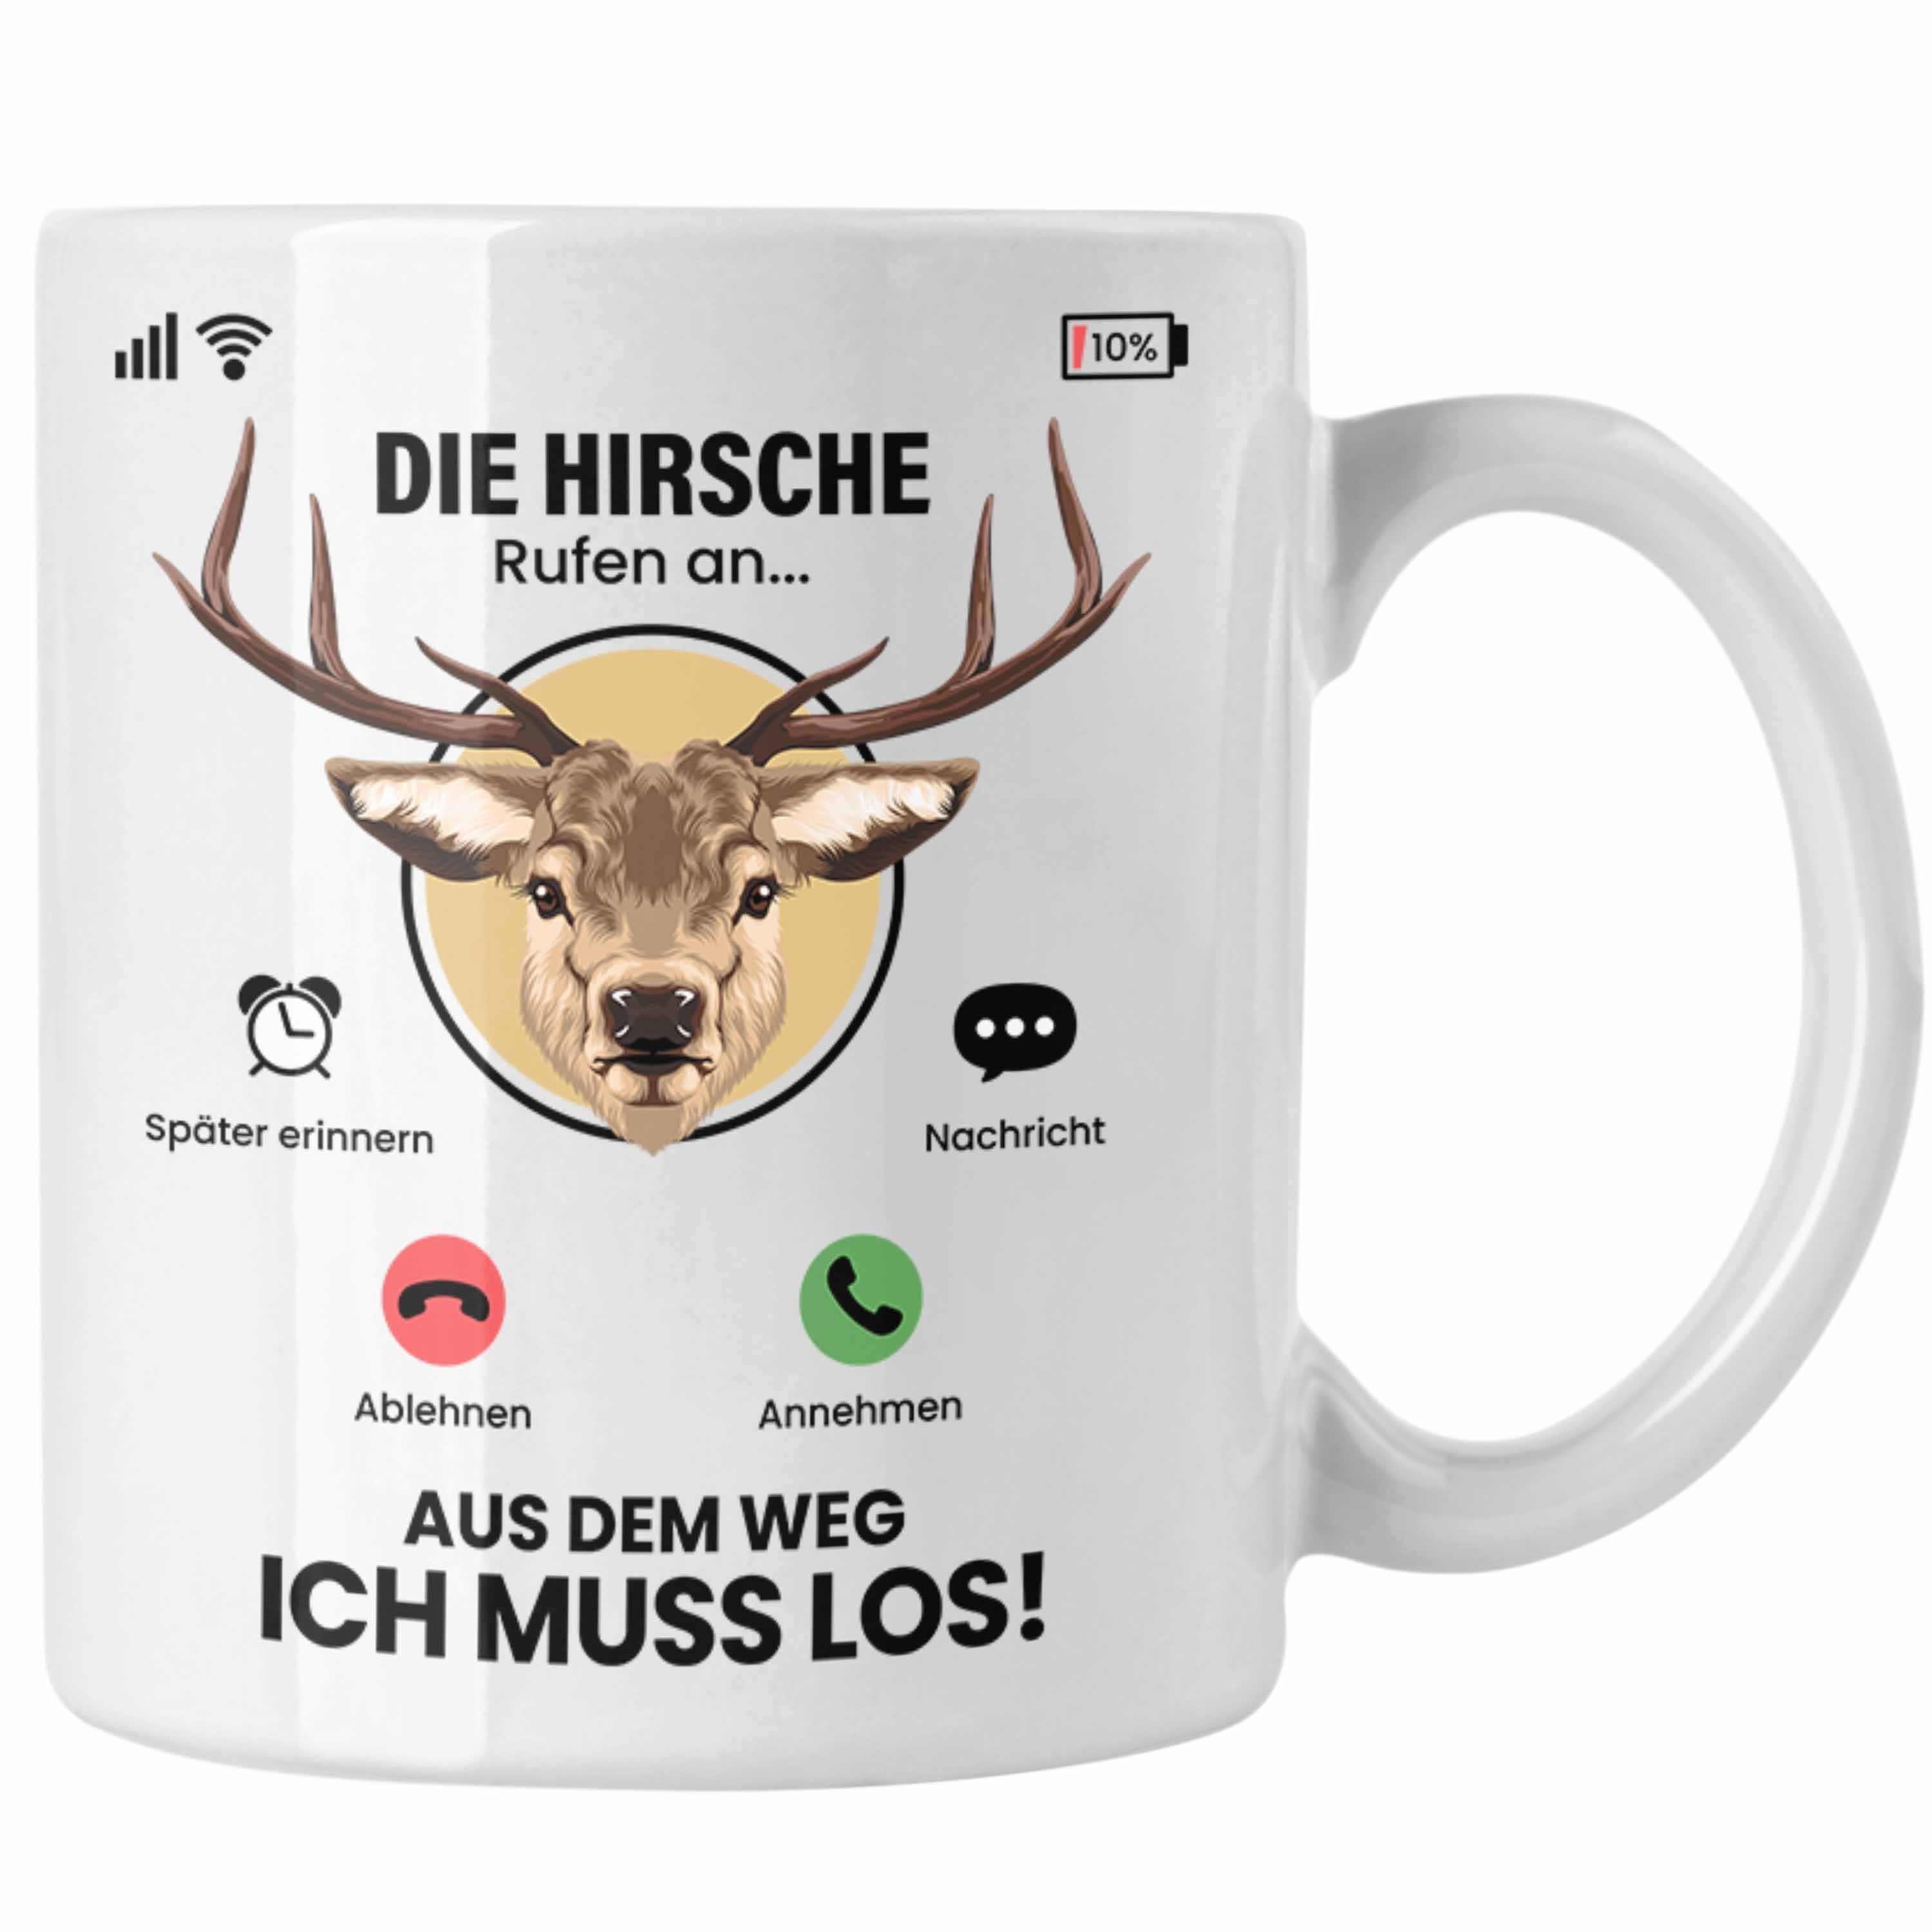 Die Hirsche Besitzer An Züchter Rufen Trendation Hirsche Tasse für Tasse Weiss Gesch Geschenk